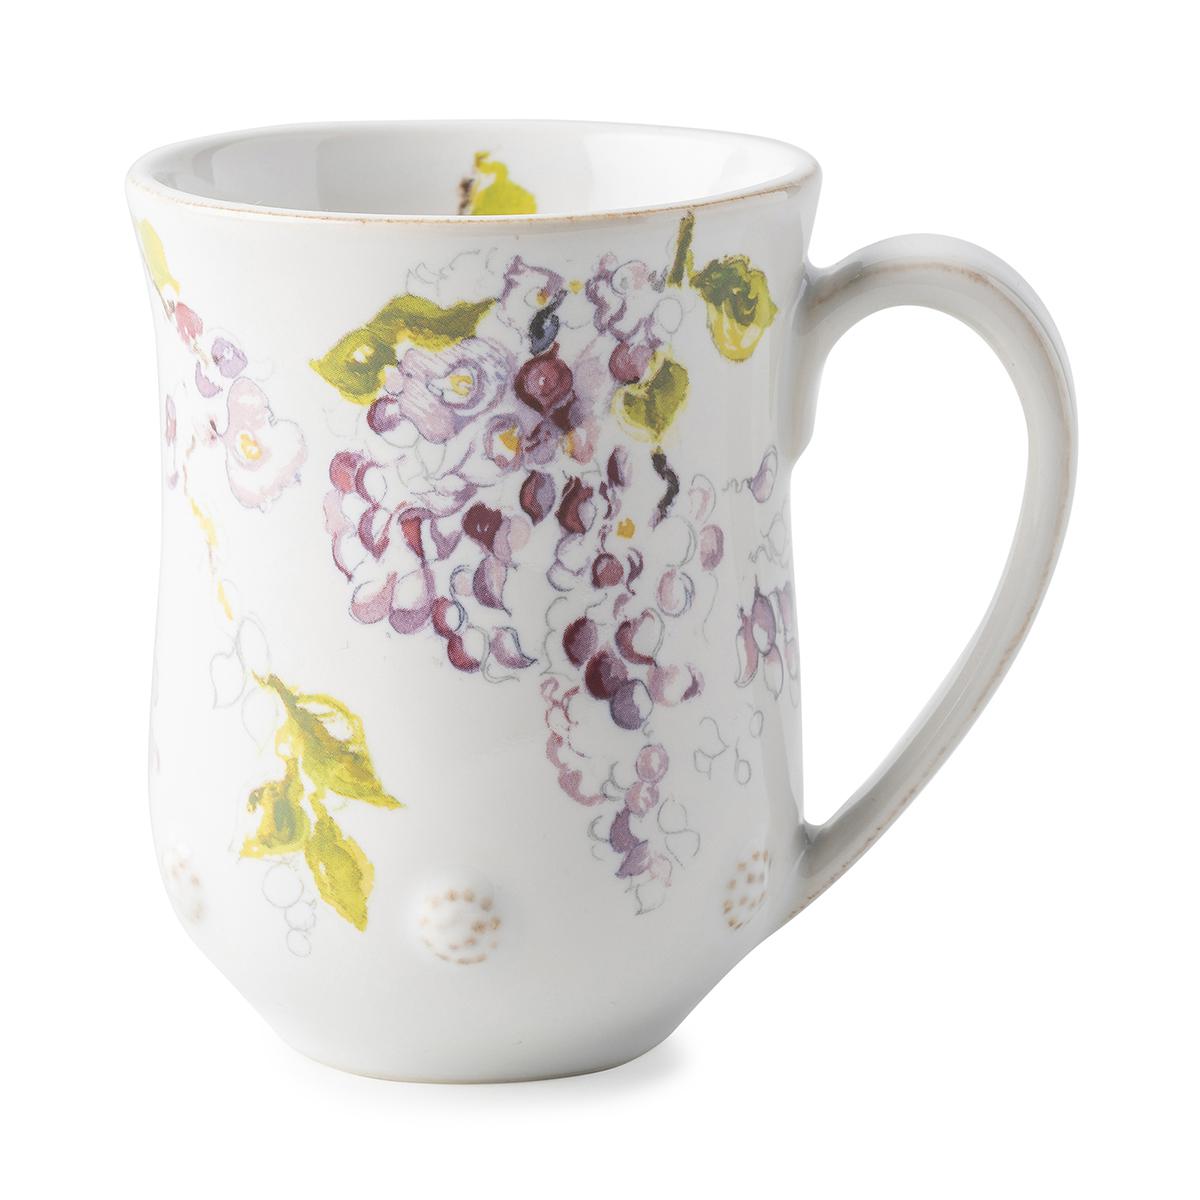 Berry & Thread Floral Sketch Wisteria Mug